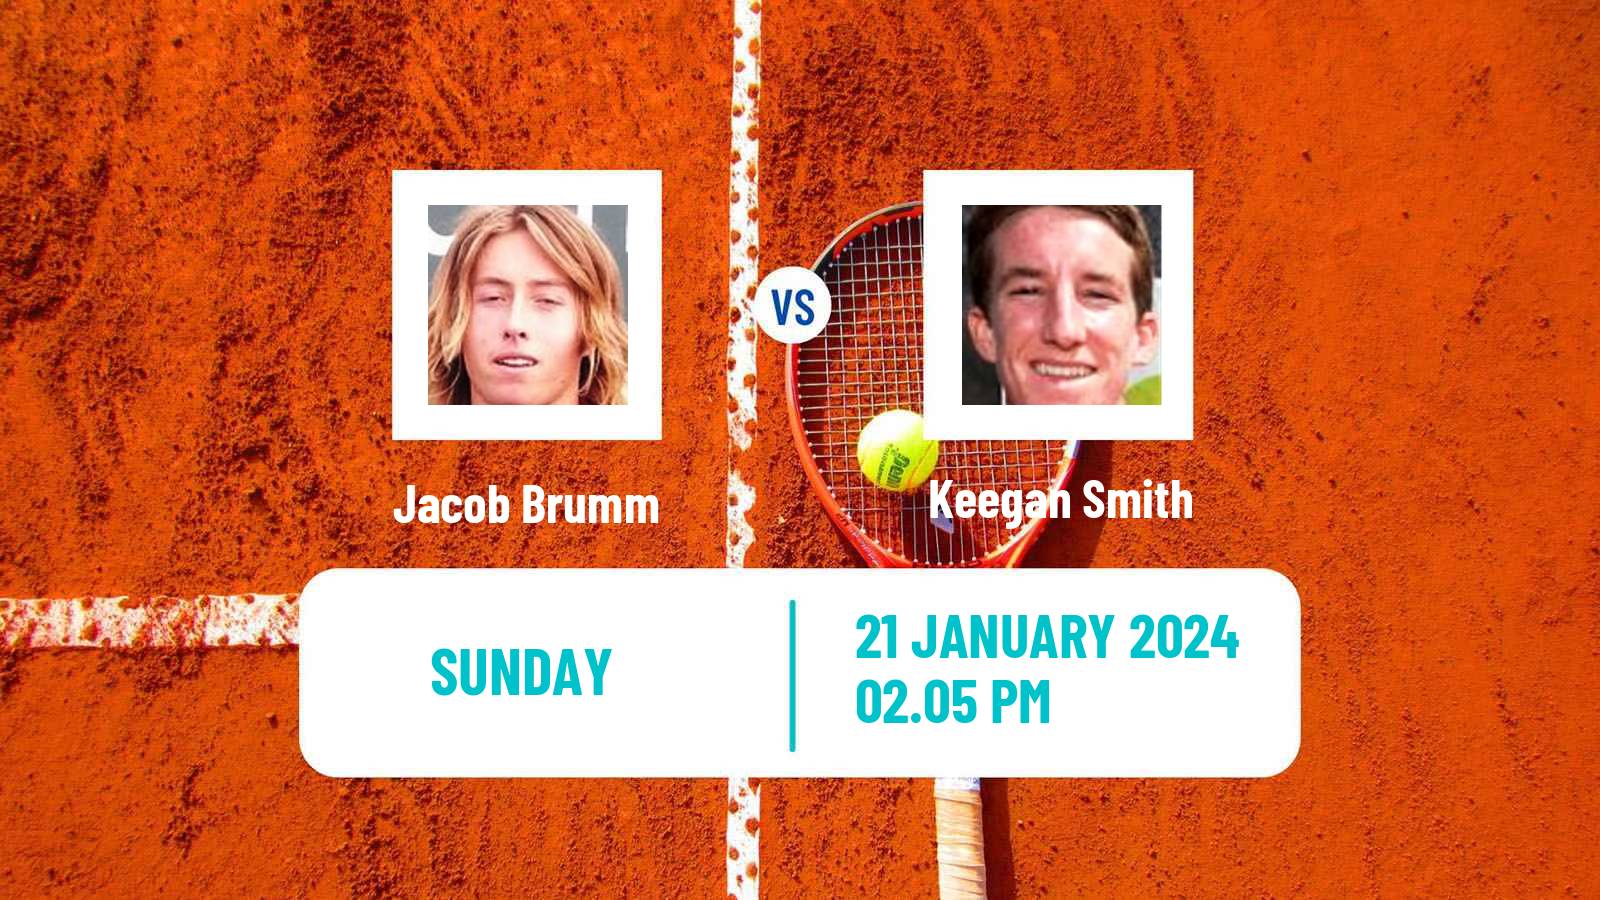 Tennis Indian Wells 2 Challenger Men Jacob Brumm - Keegan Smith